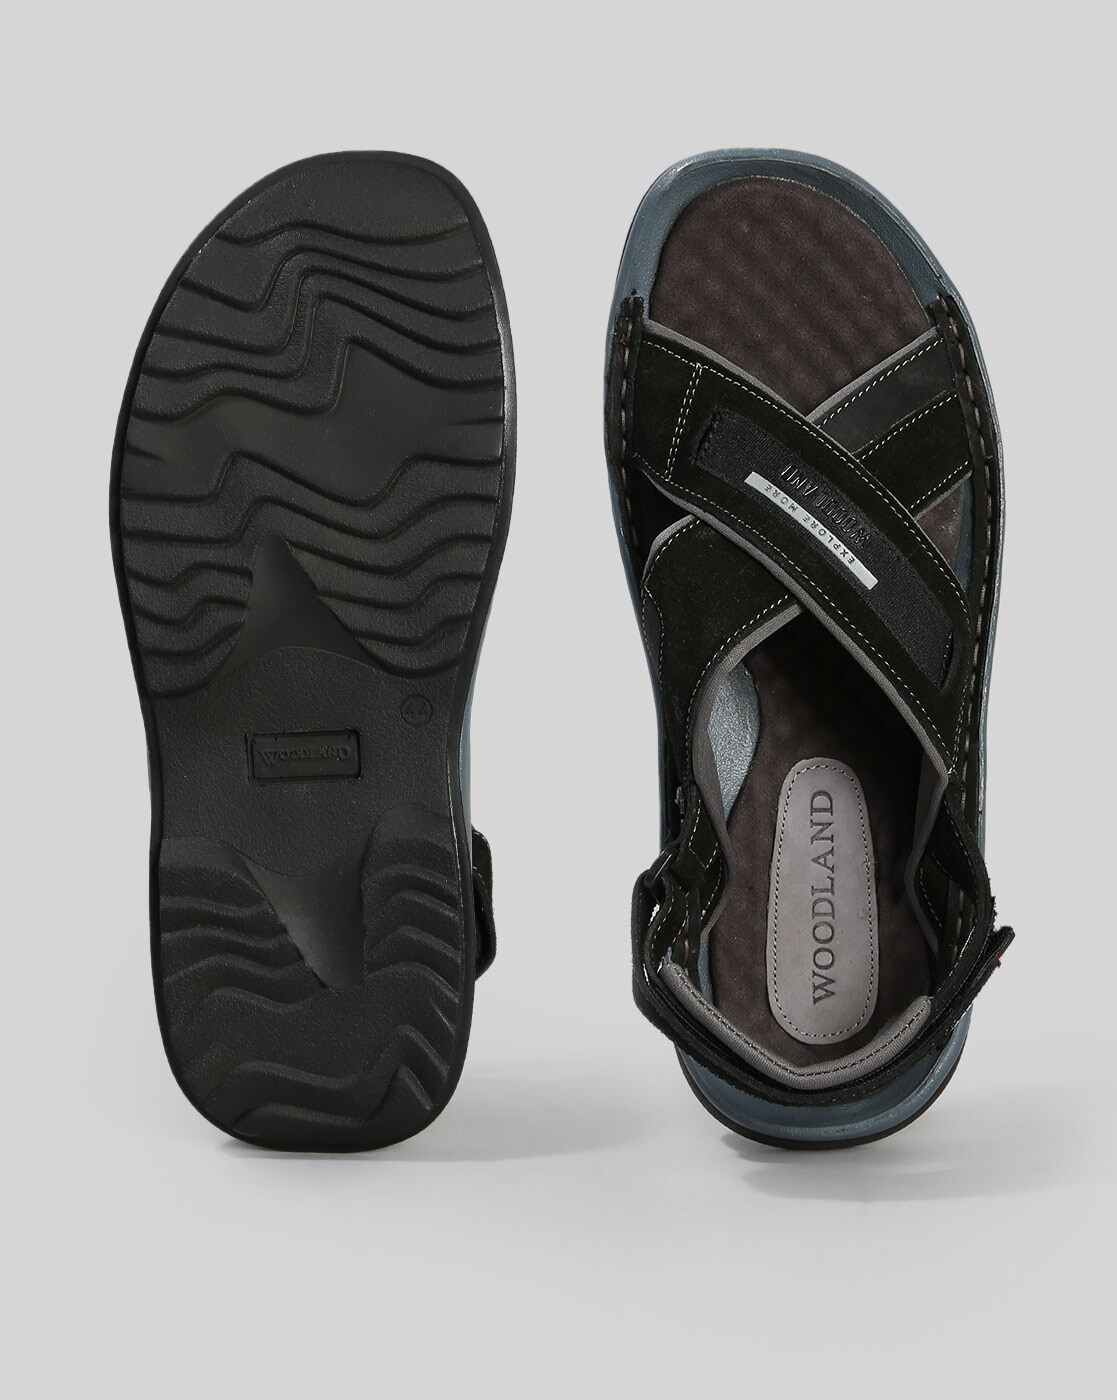 Woodland Men's Khaki Leather Sandals - (5 UK) : Amazon.in: Fashion